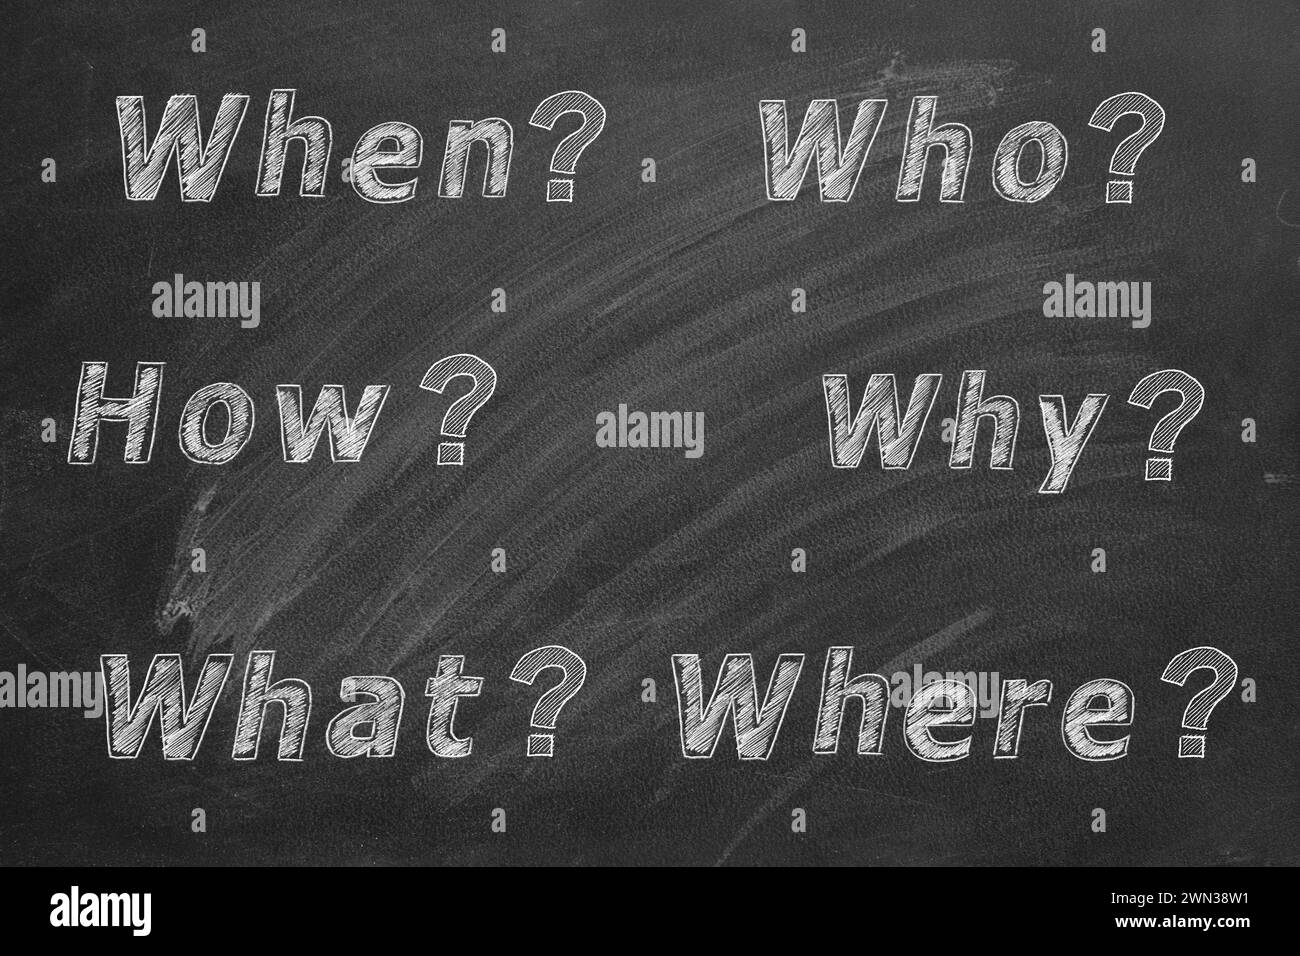 Le sei domande più comuni su chi, cosa, dove, quando, perché, come con punto interrogativo. Fare domande. Avere risposte. Illustrazione gesso sulla lavagna. DOMANDE FREQUENTI Foto Stock